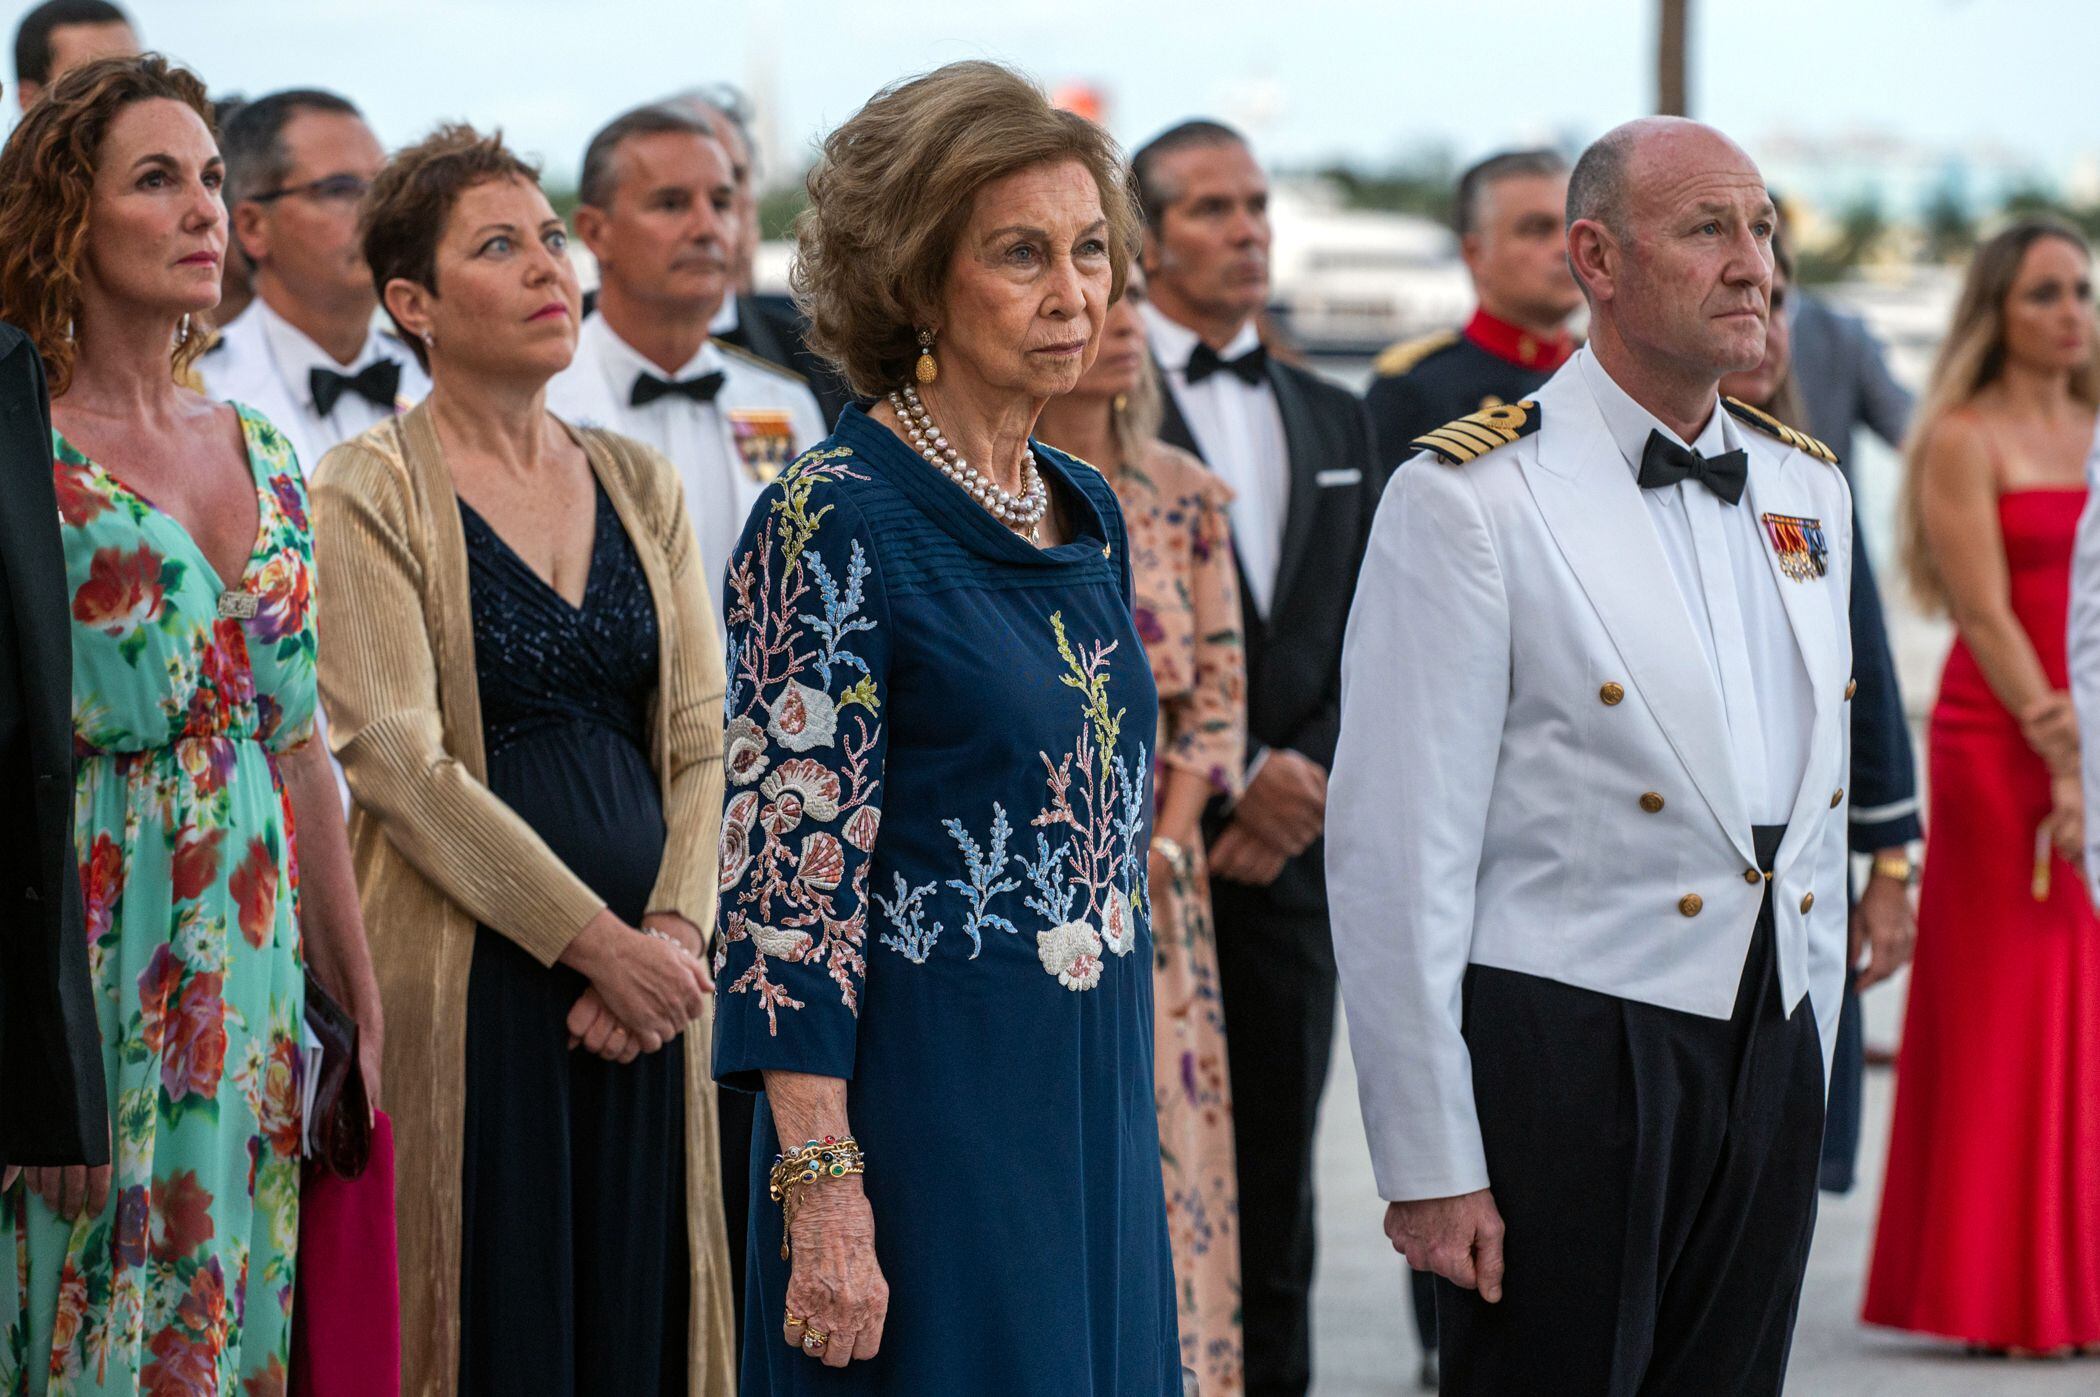 La reina emérita Sofía, este miércoles durante un acto de arriado de bandera en el Bayfront Park de la Bahía Vizcaína en Miami, Florida.